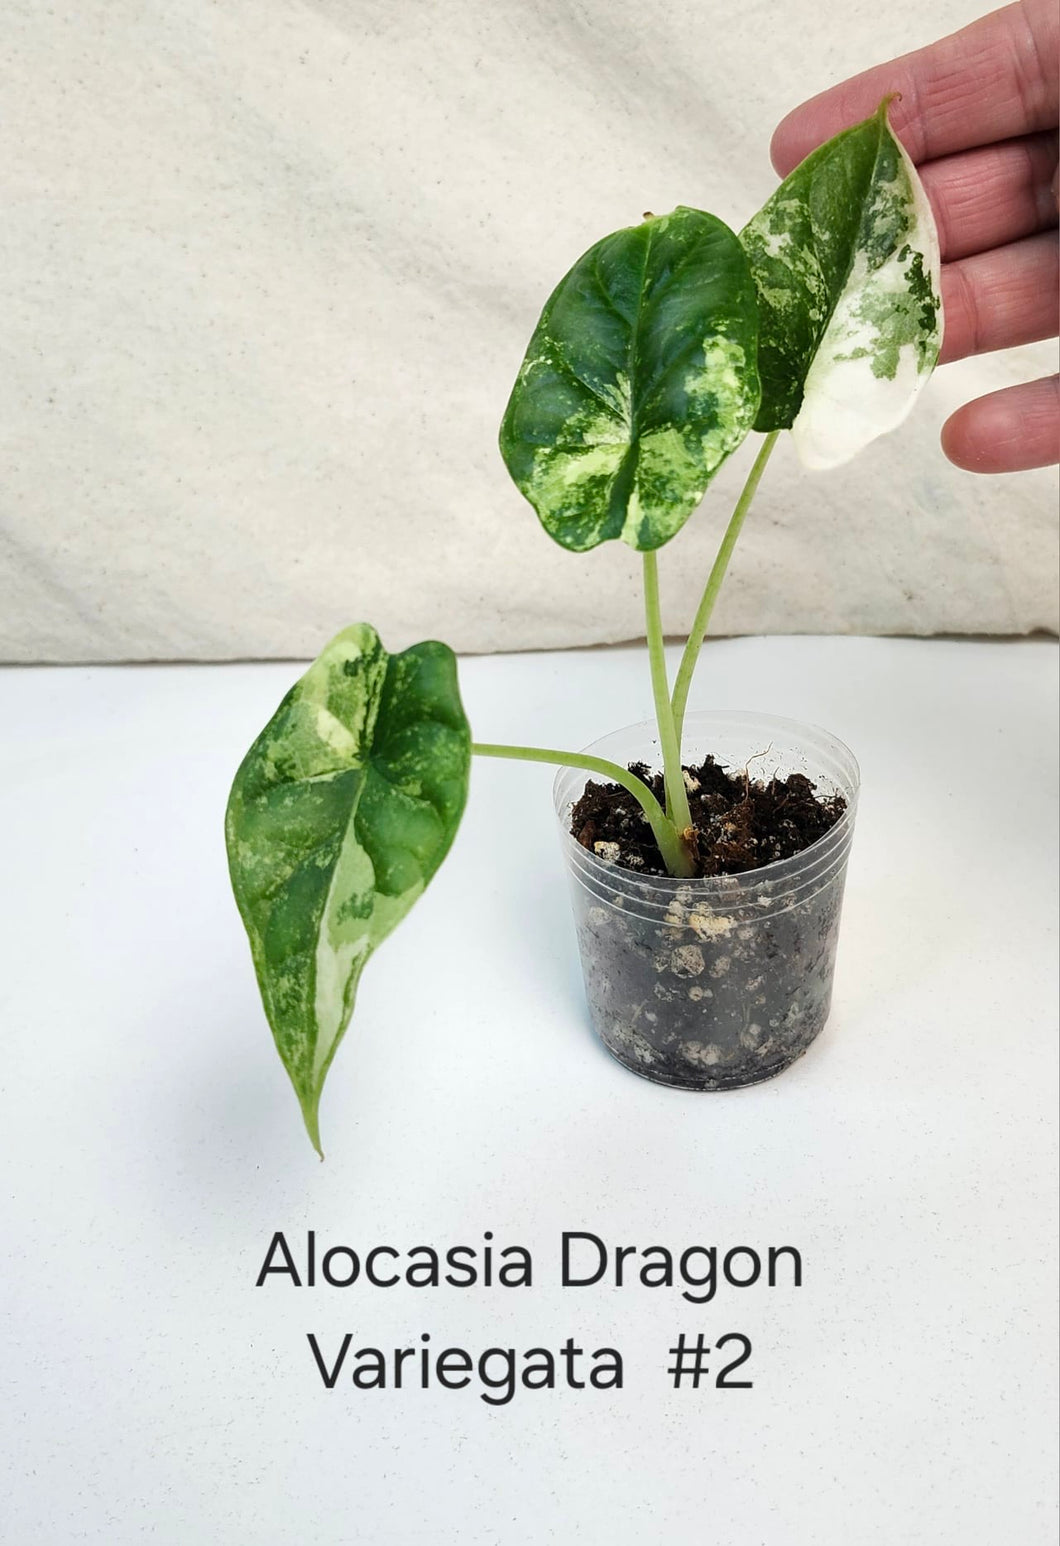 Alocasia Dragon Scale variegata #2